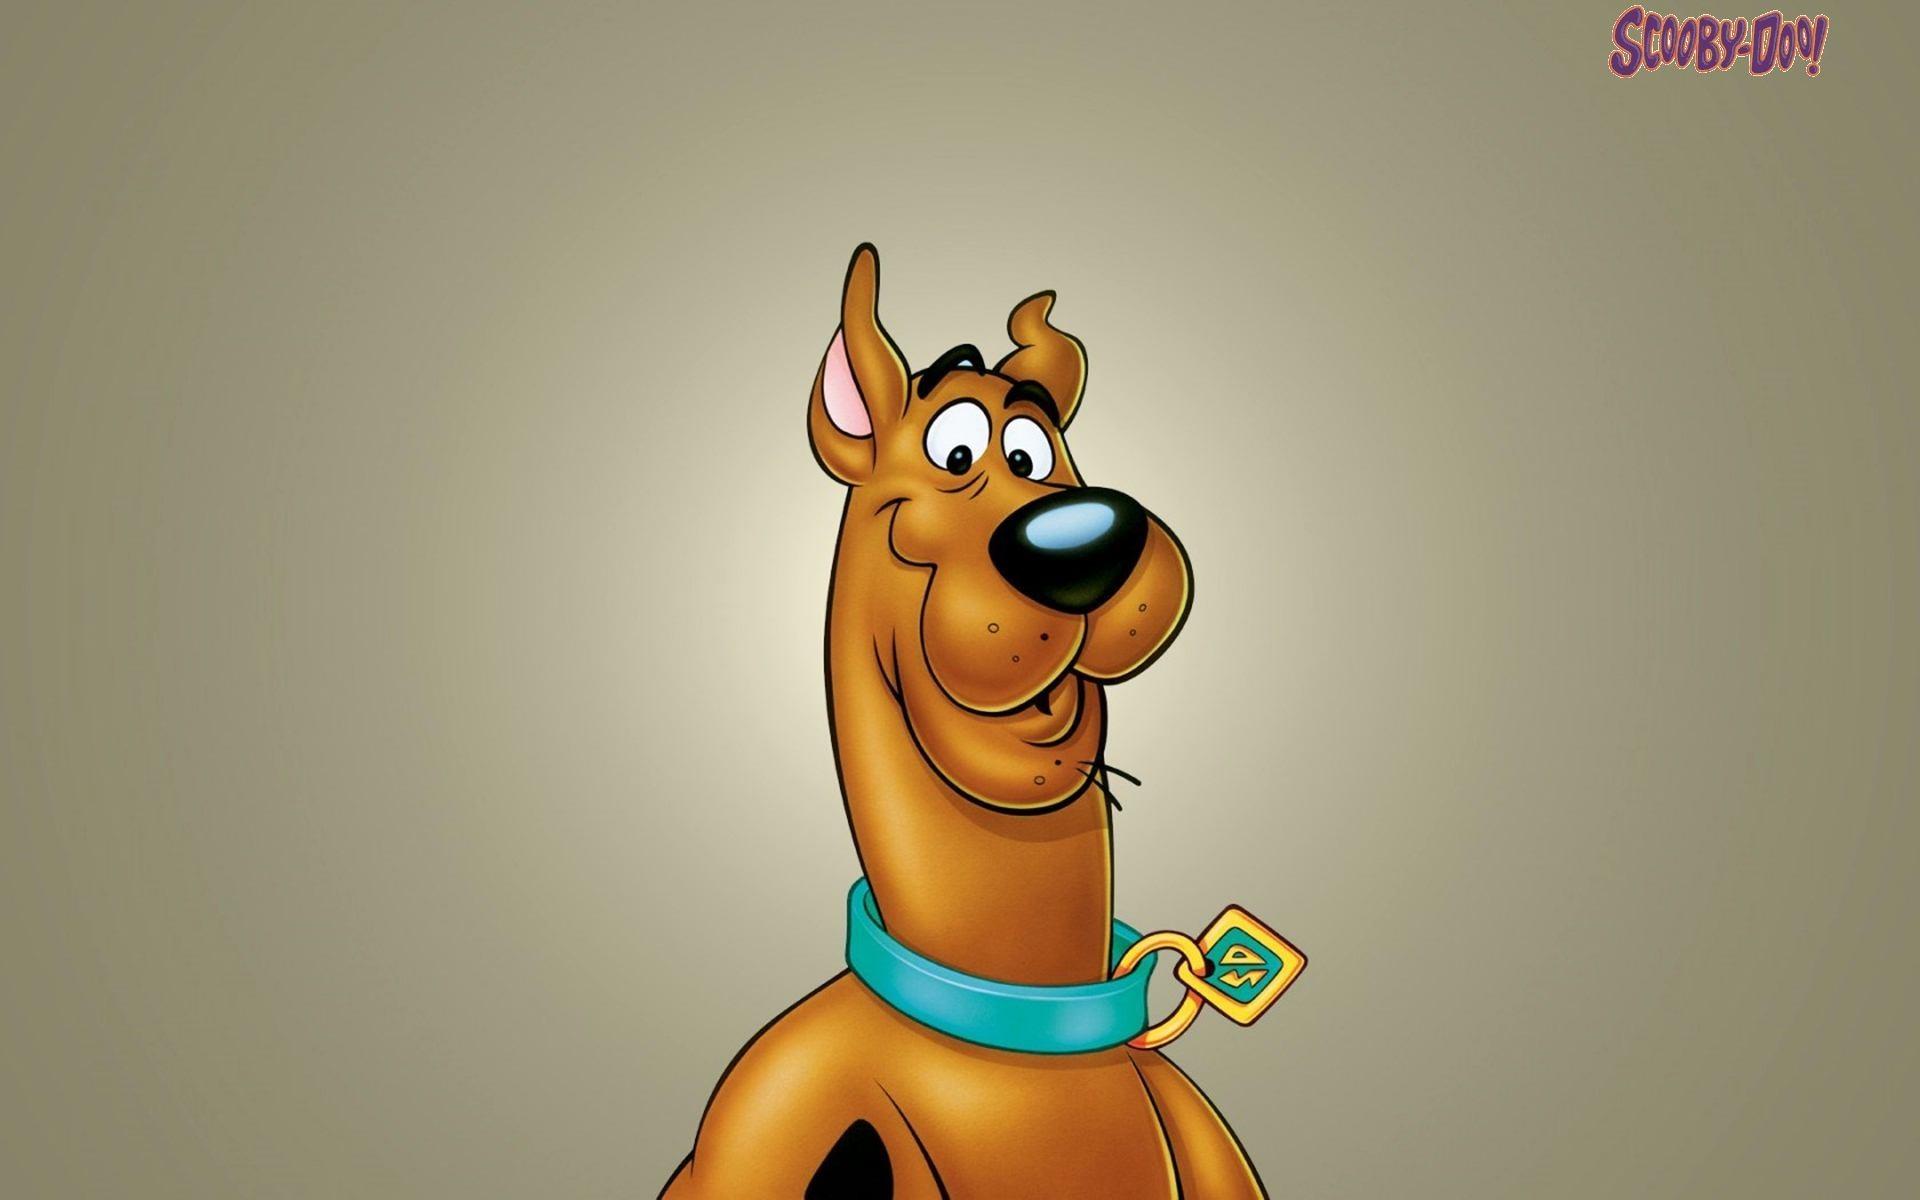 75+] Scooby Doo Backgrounds - WallpaperSafari